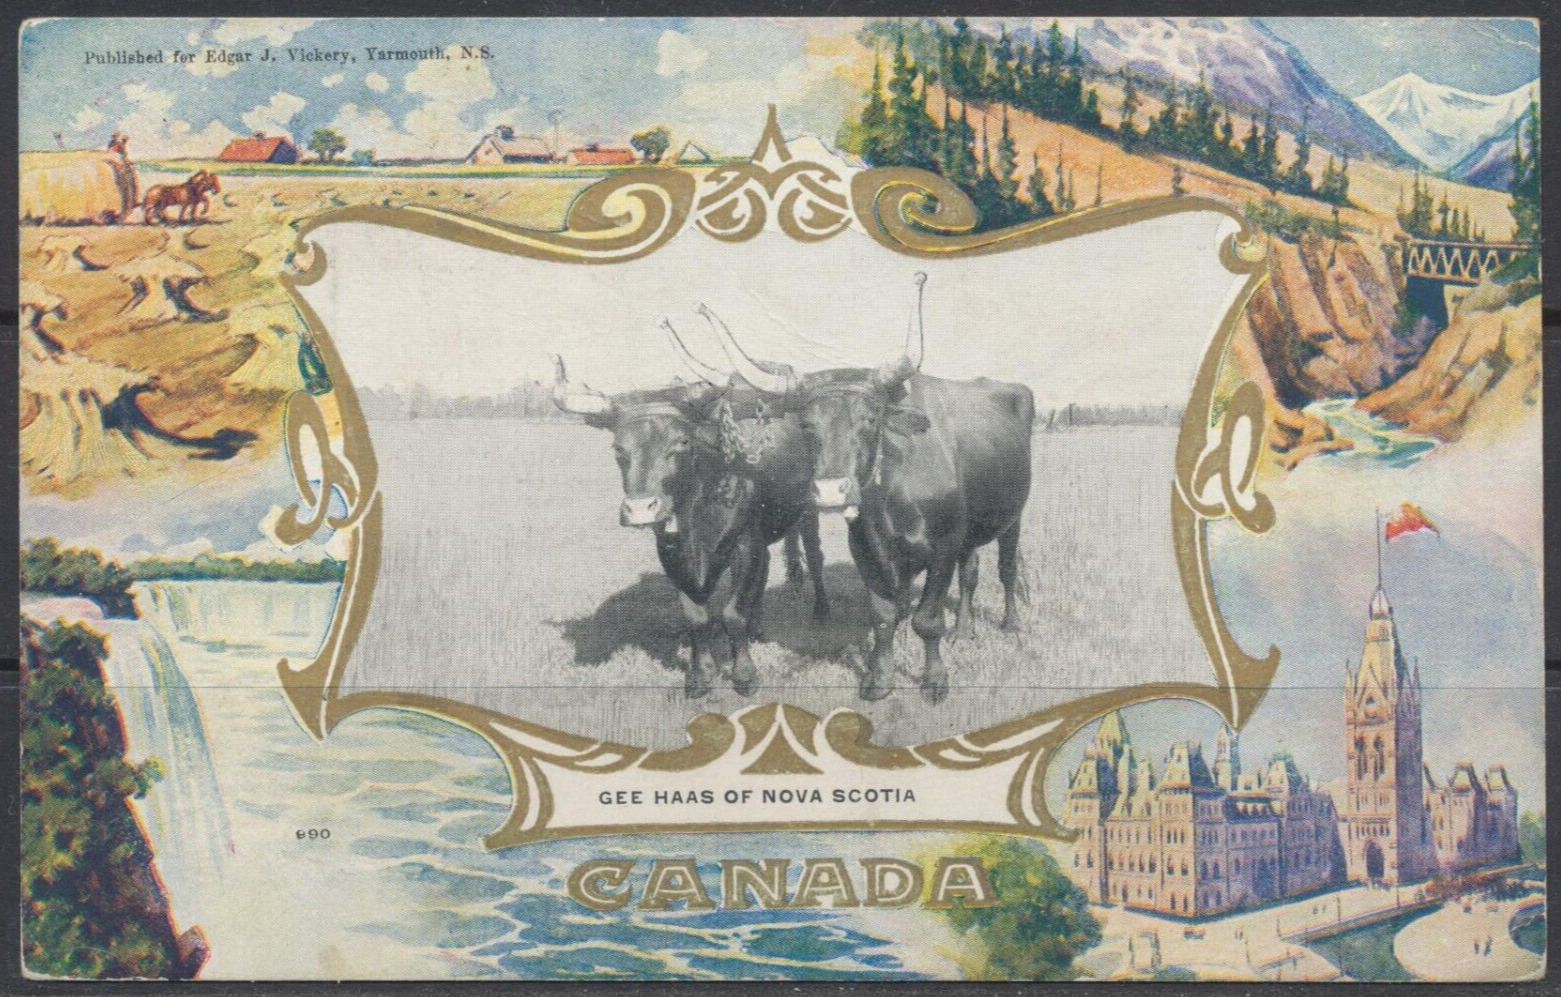 1908 Canada ~ Yarmouth, N.S. ~ Gee Haas of Nova Scotia ~ Warwick ~ Edgar Vickery